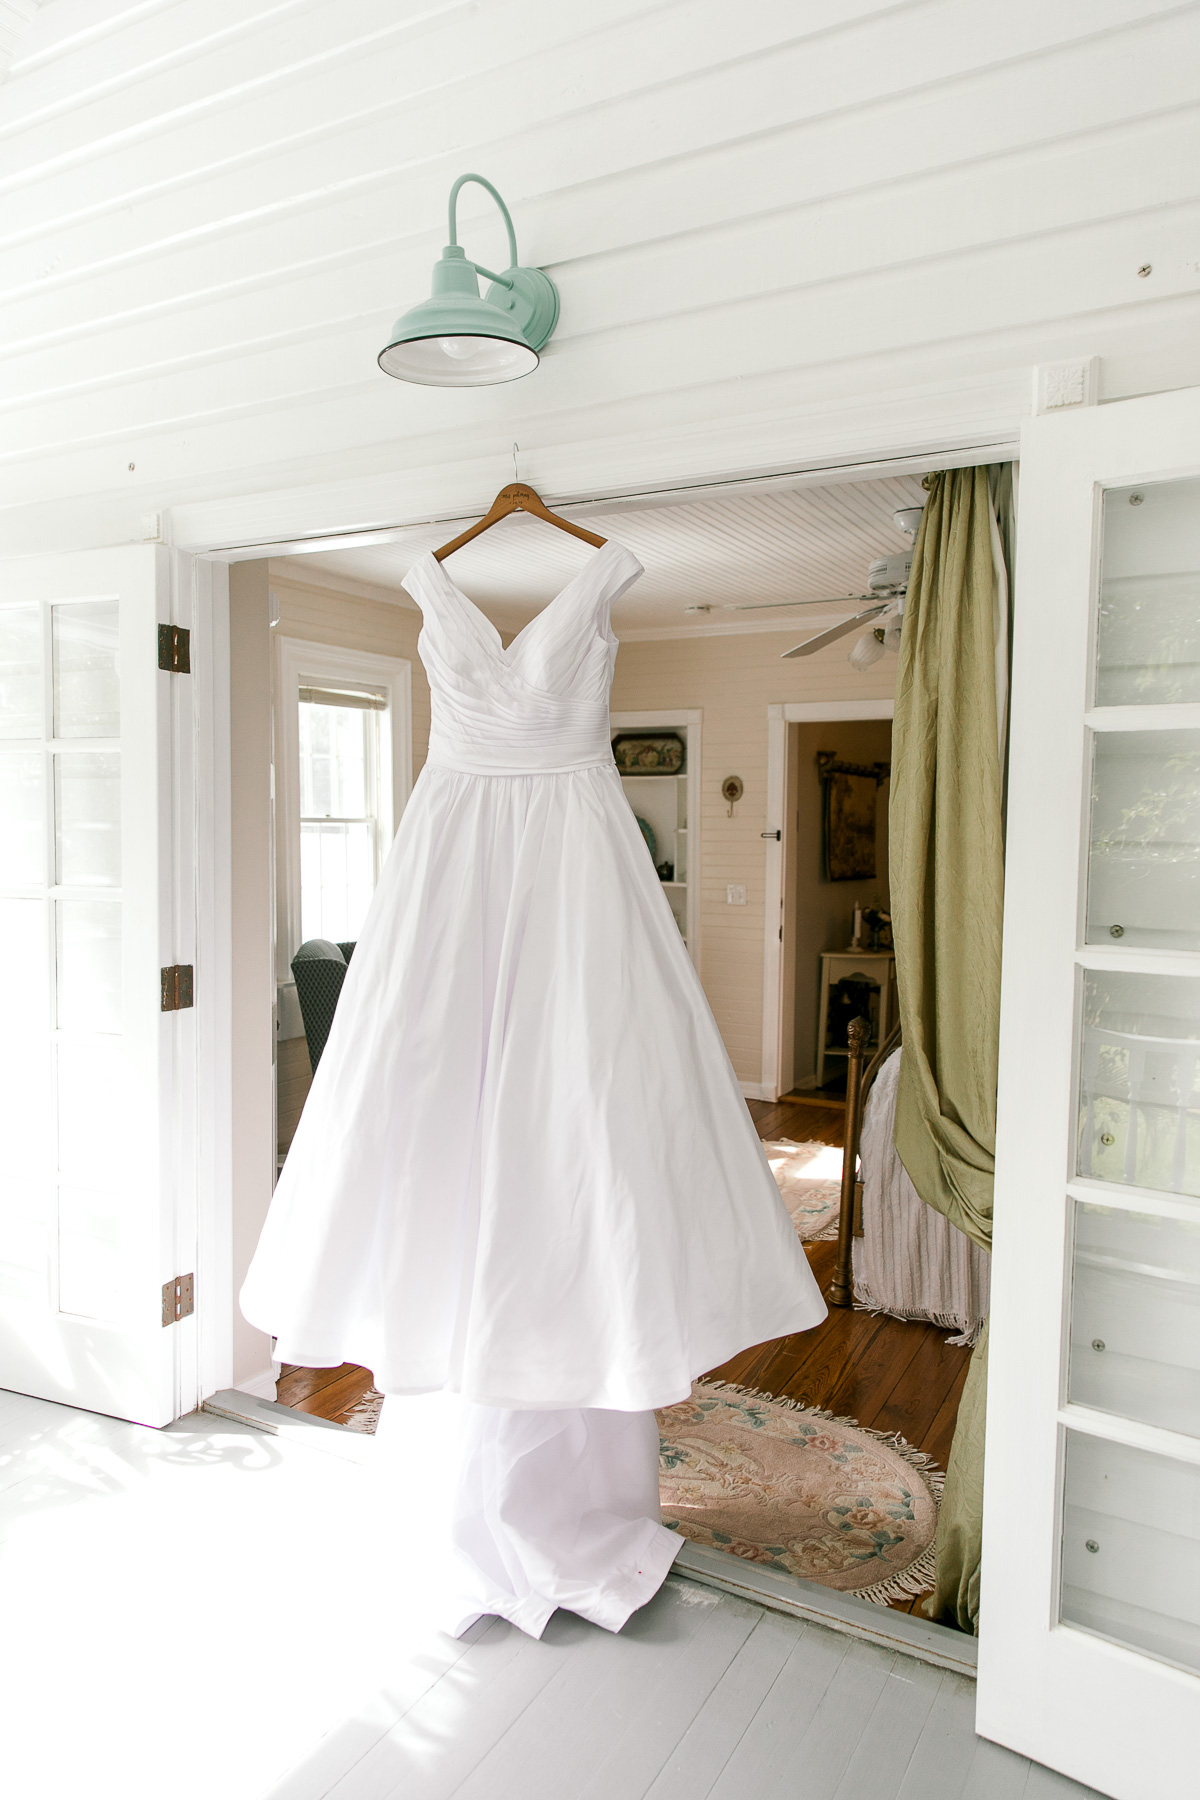 Wedding dress hanging in the doorframe 